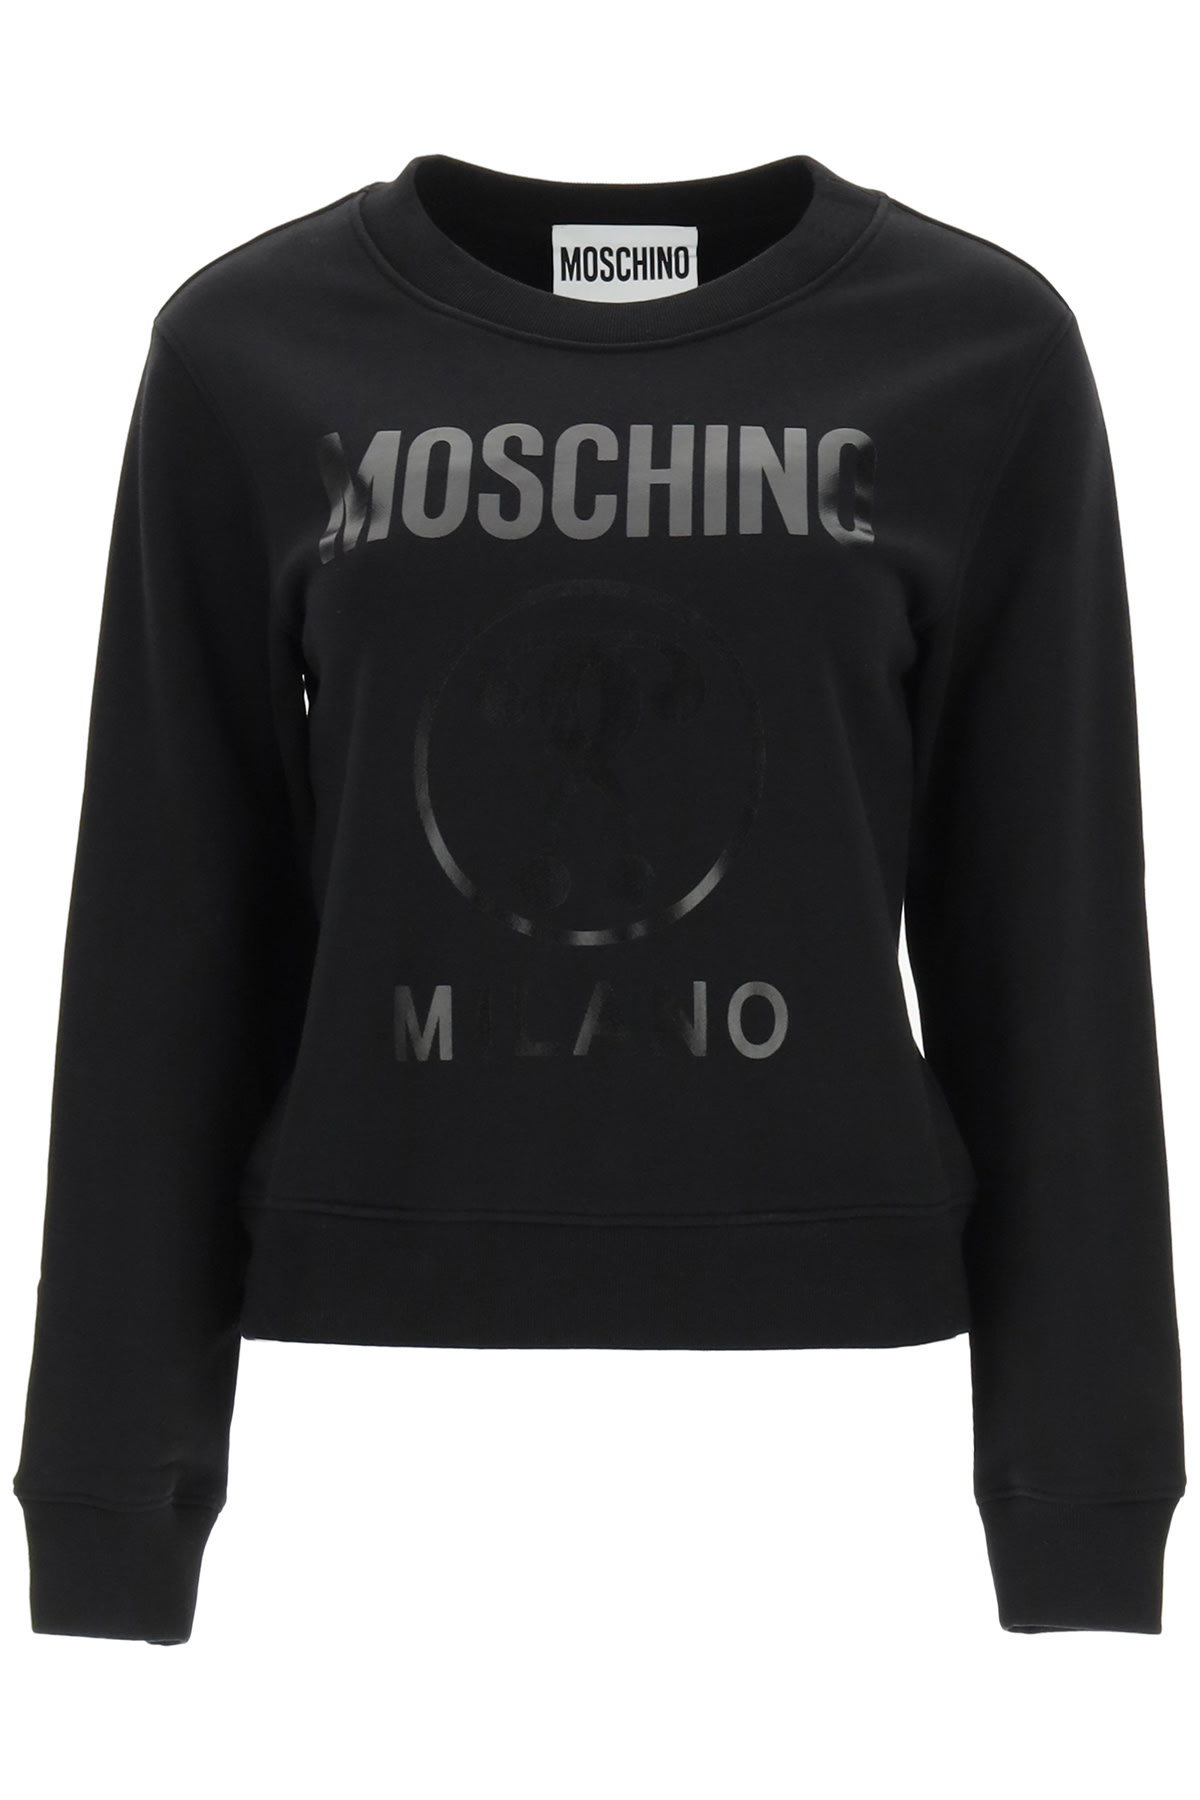 Moschino Milano Logo Print Sweatshirt